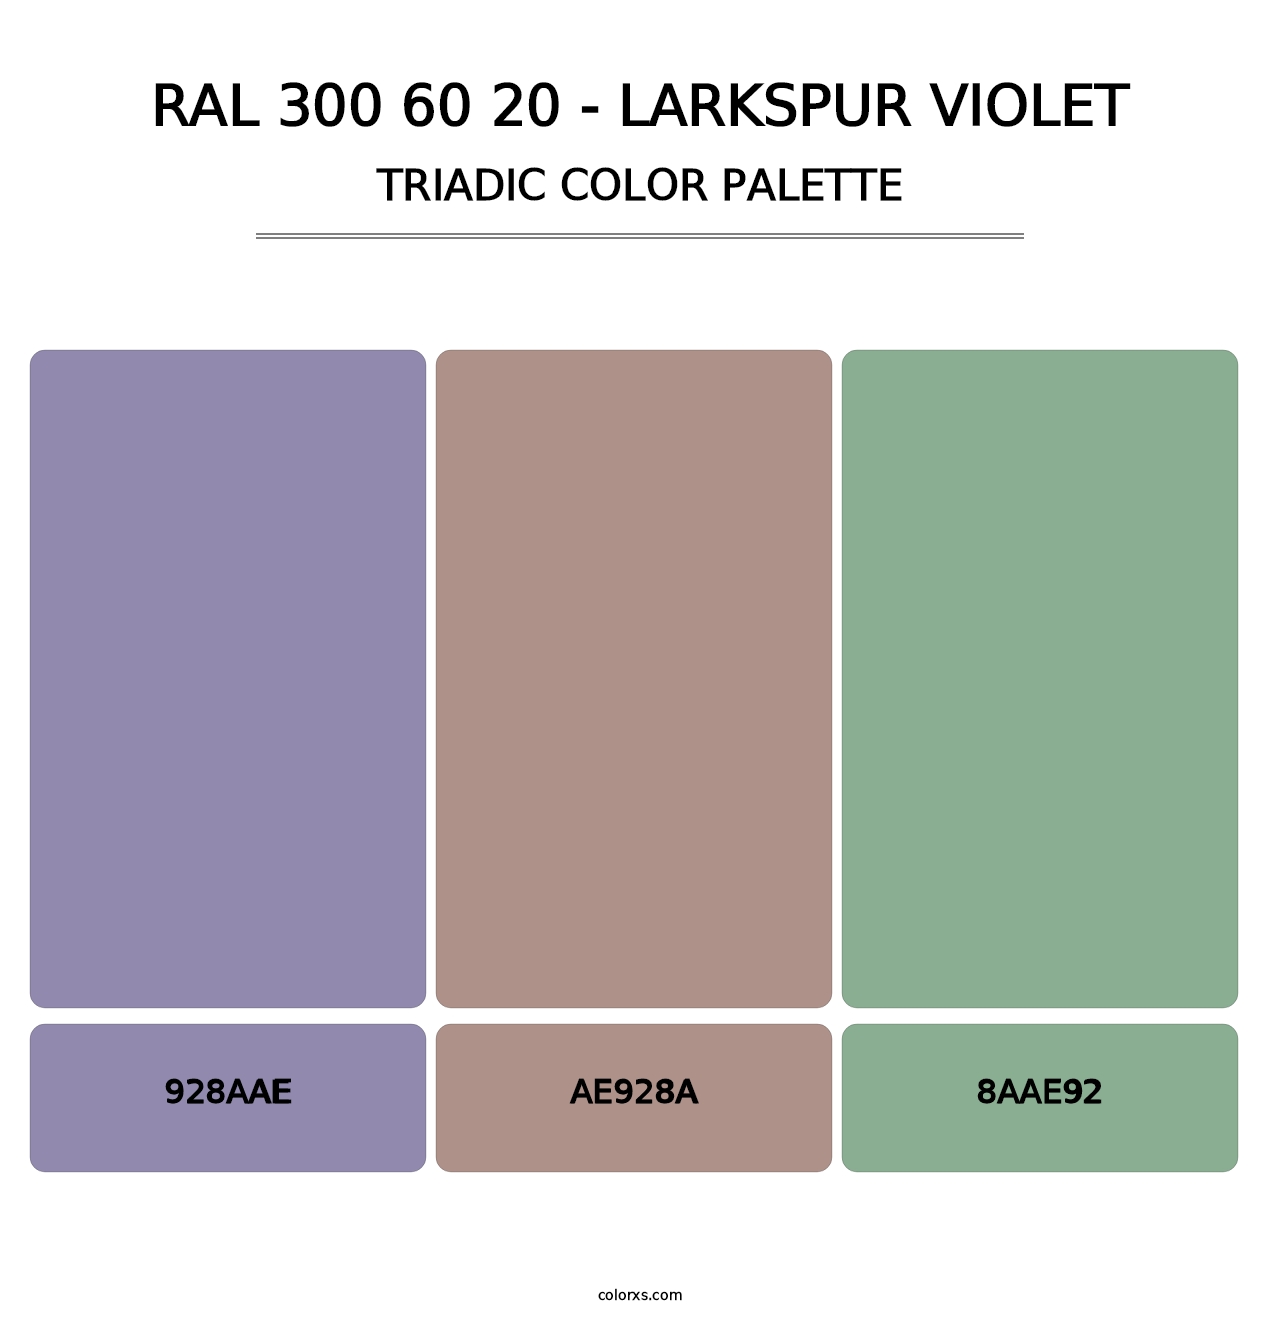 RAL 300 60 20 - Larkspur Violet - Triadic Color Palette